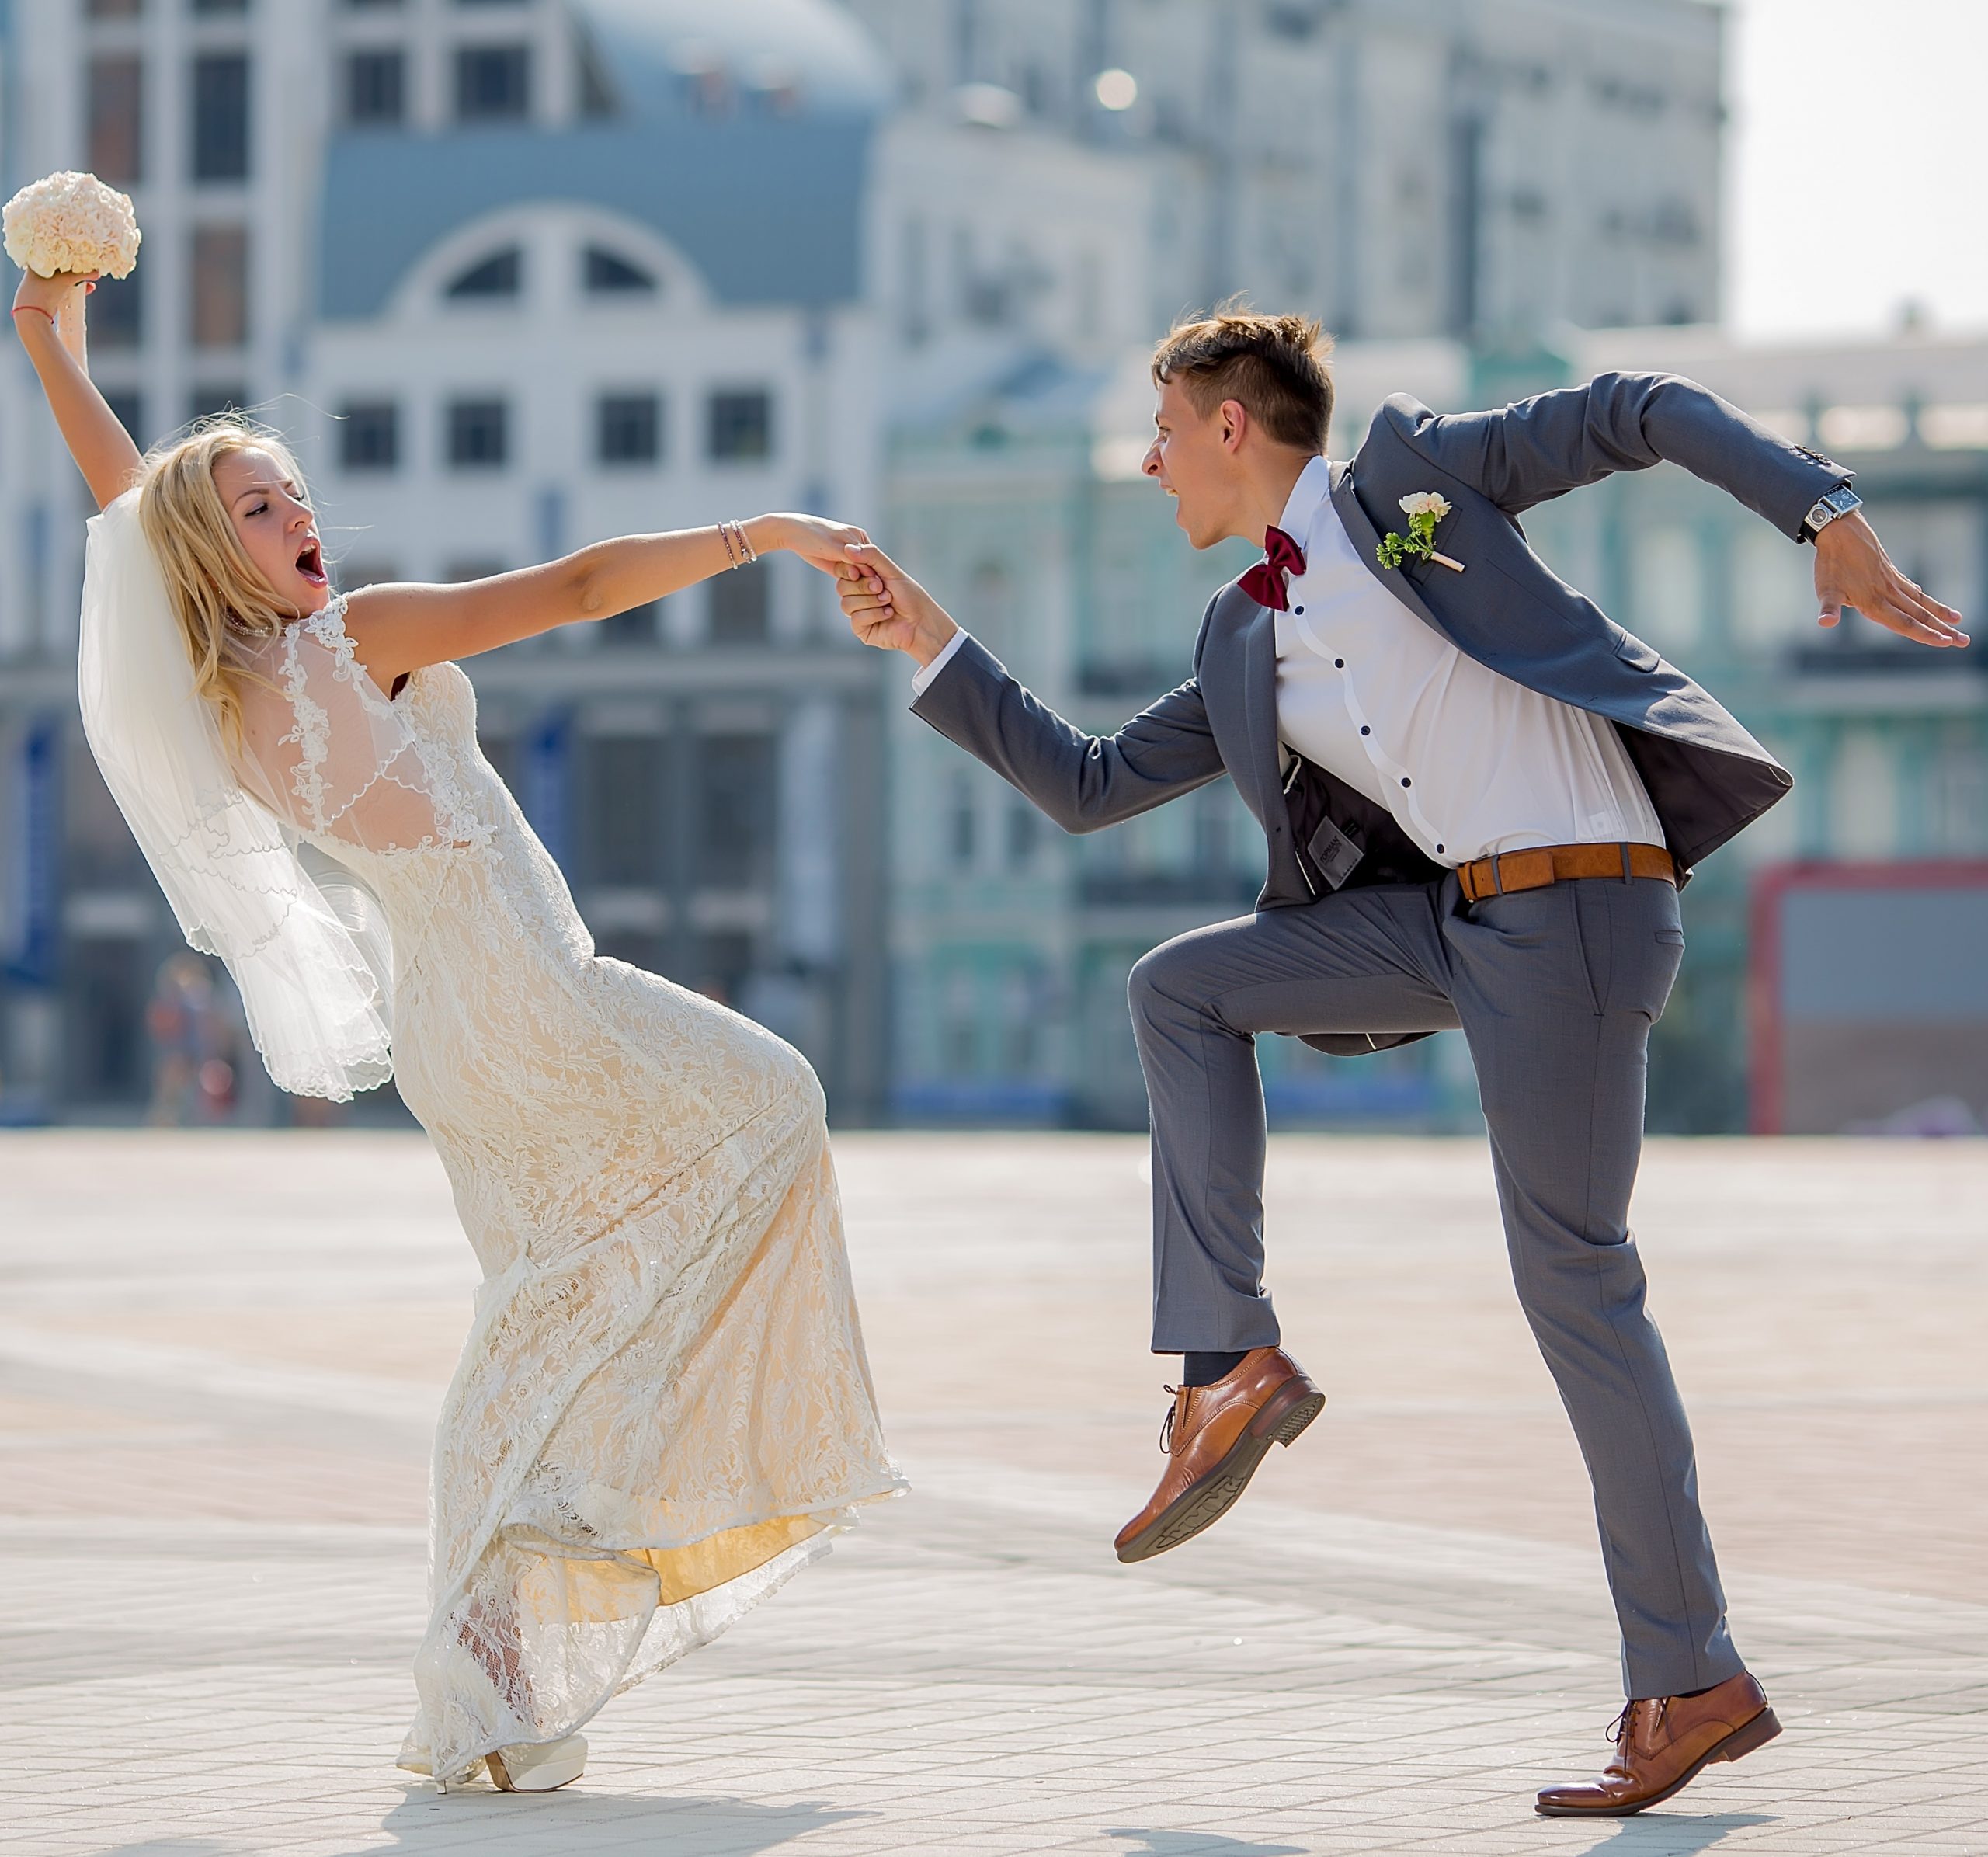 bride and groom in wedding attire dancing